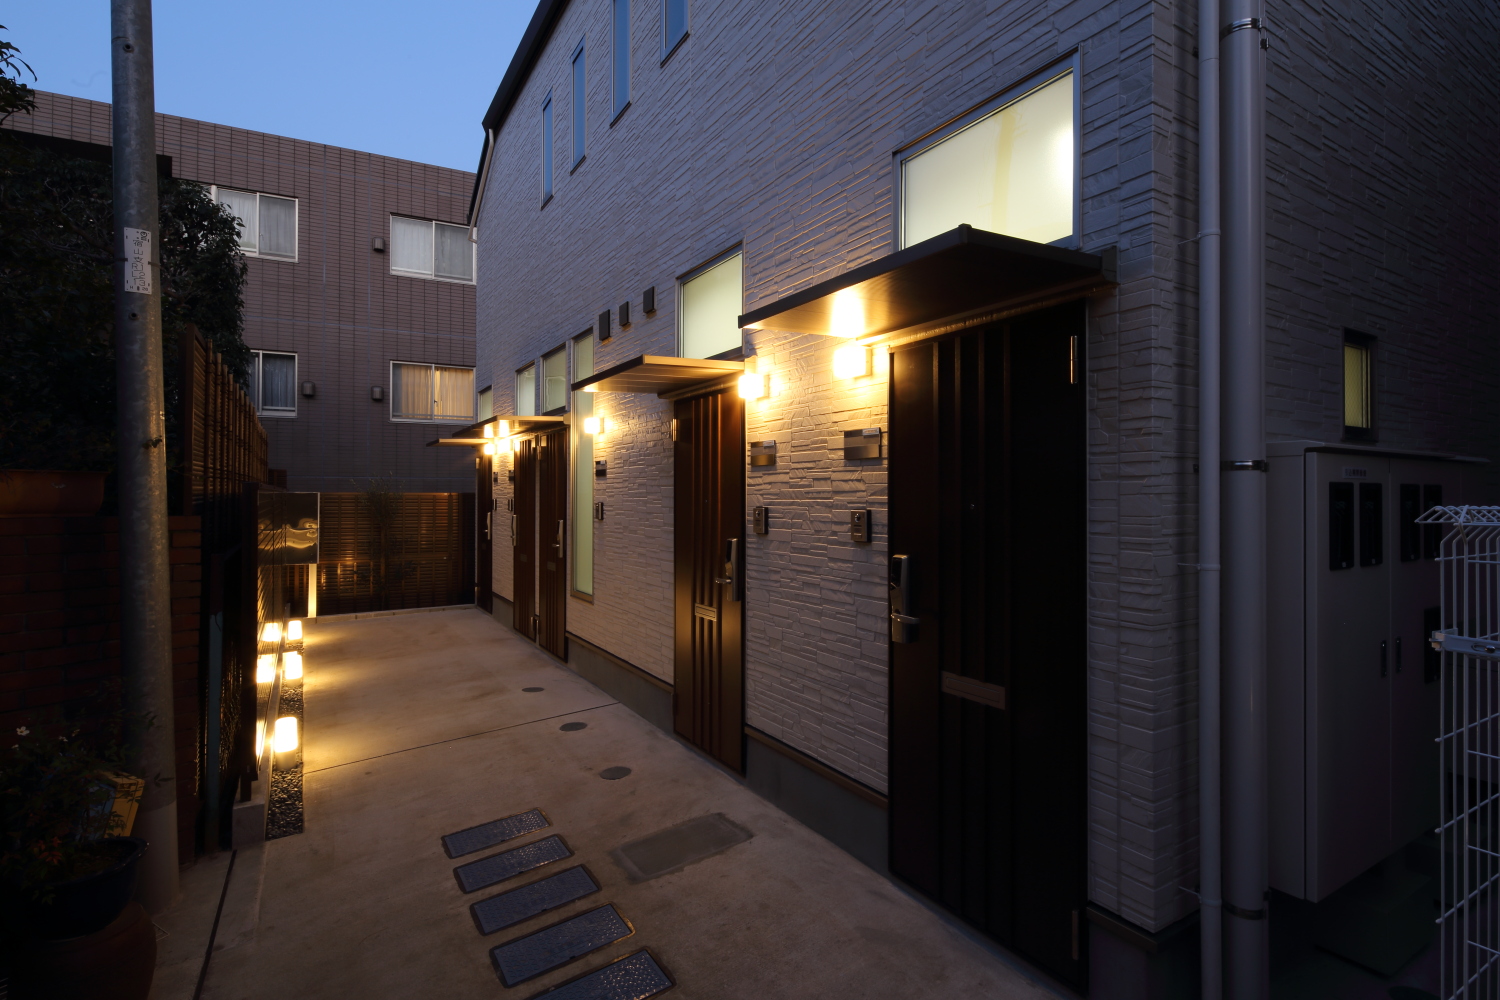 木造２階建て賃貸アパートの外部玄関アプローチ明かり照明ライト 北島建築設計事務所